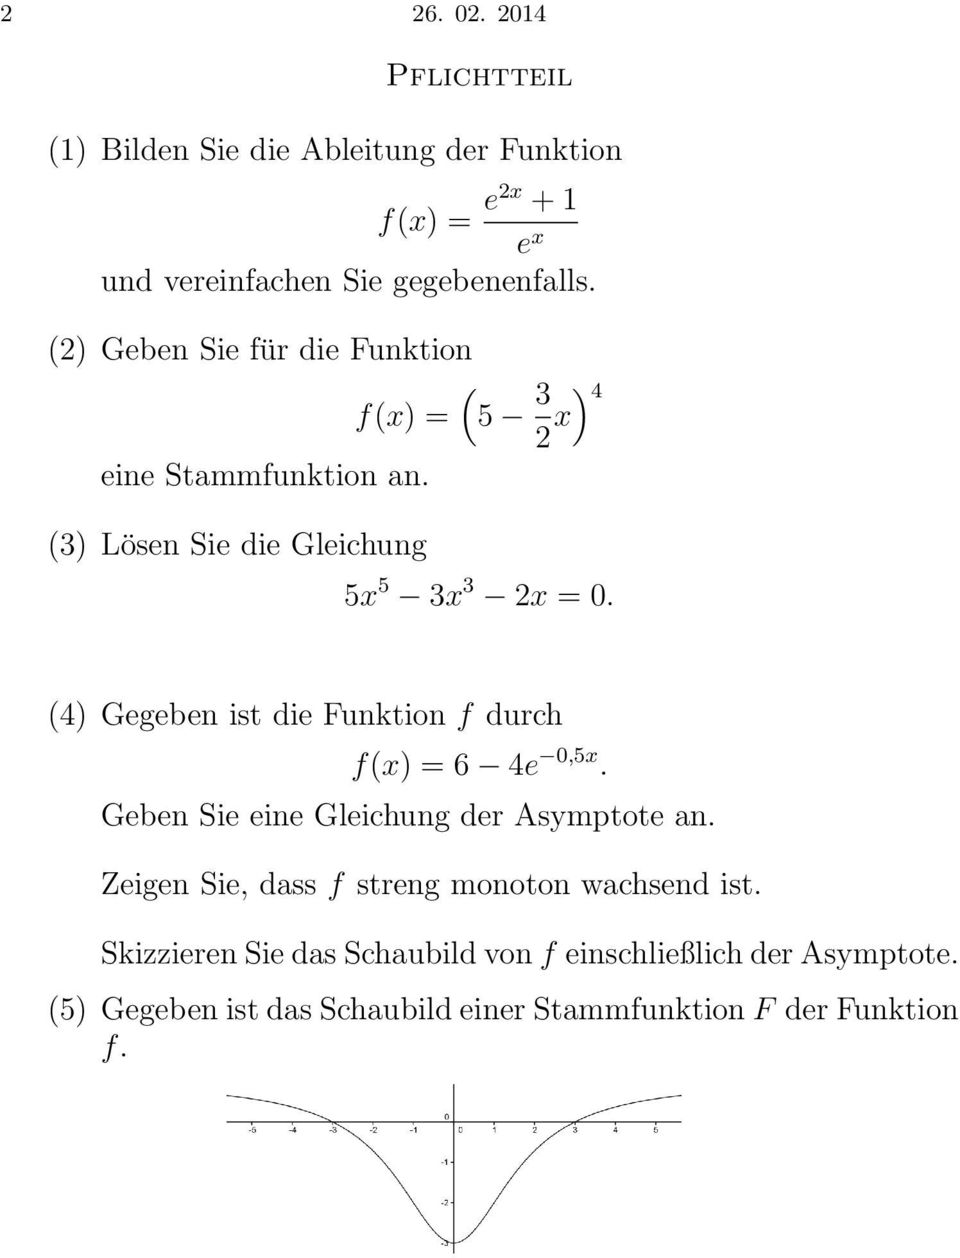 (4 Gegeben ist die Funktion f durch f(x = 6 4e,5x. Geben Sie eine Gleichung der Asymptote an.